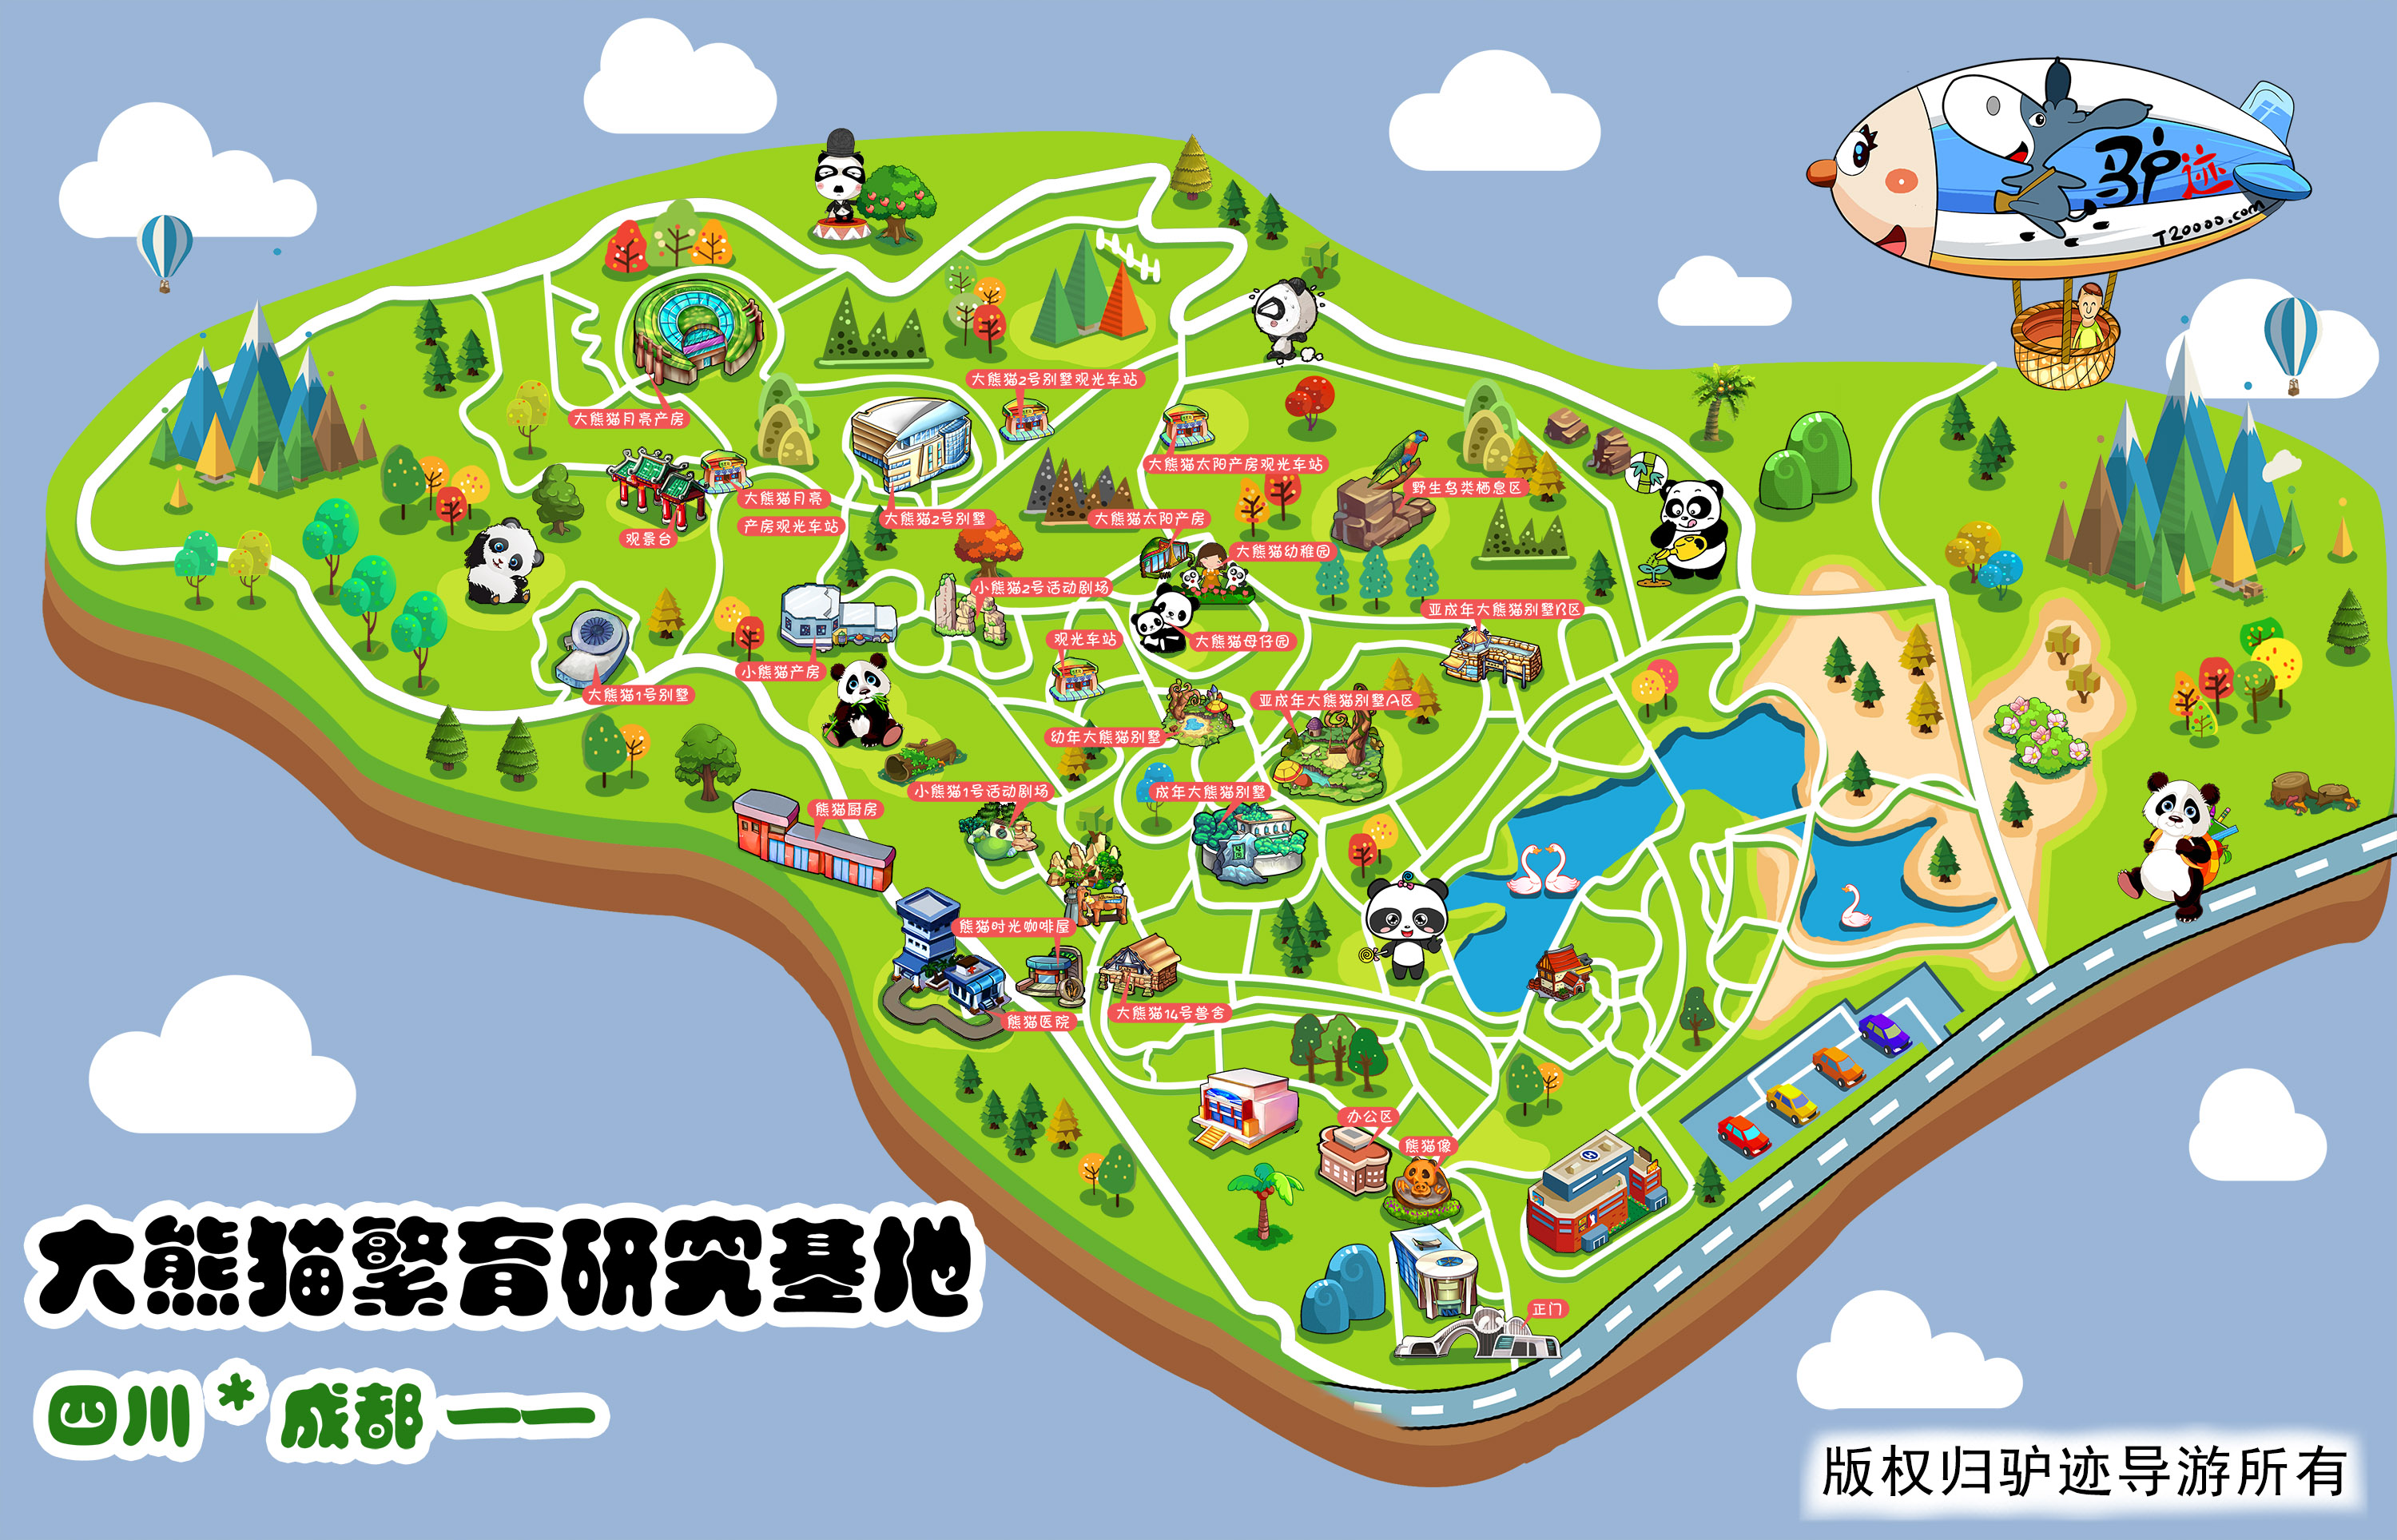 成都大熊猫繁育研究基地手机导游【全景地图,园内导航图片